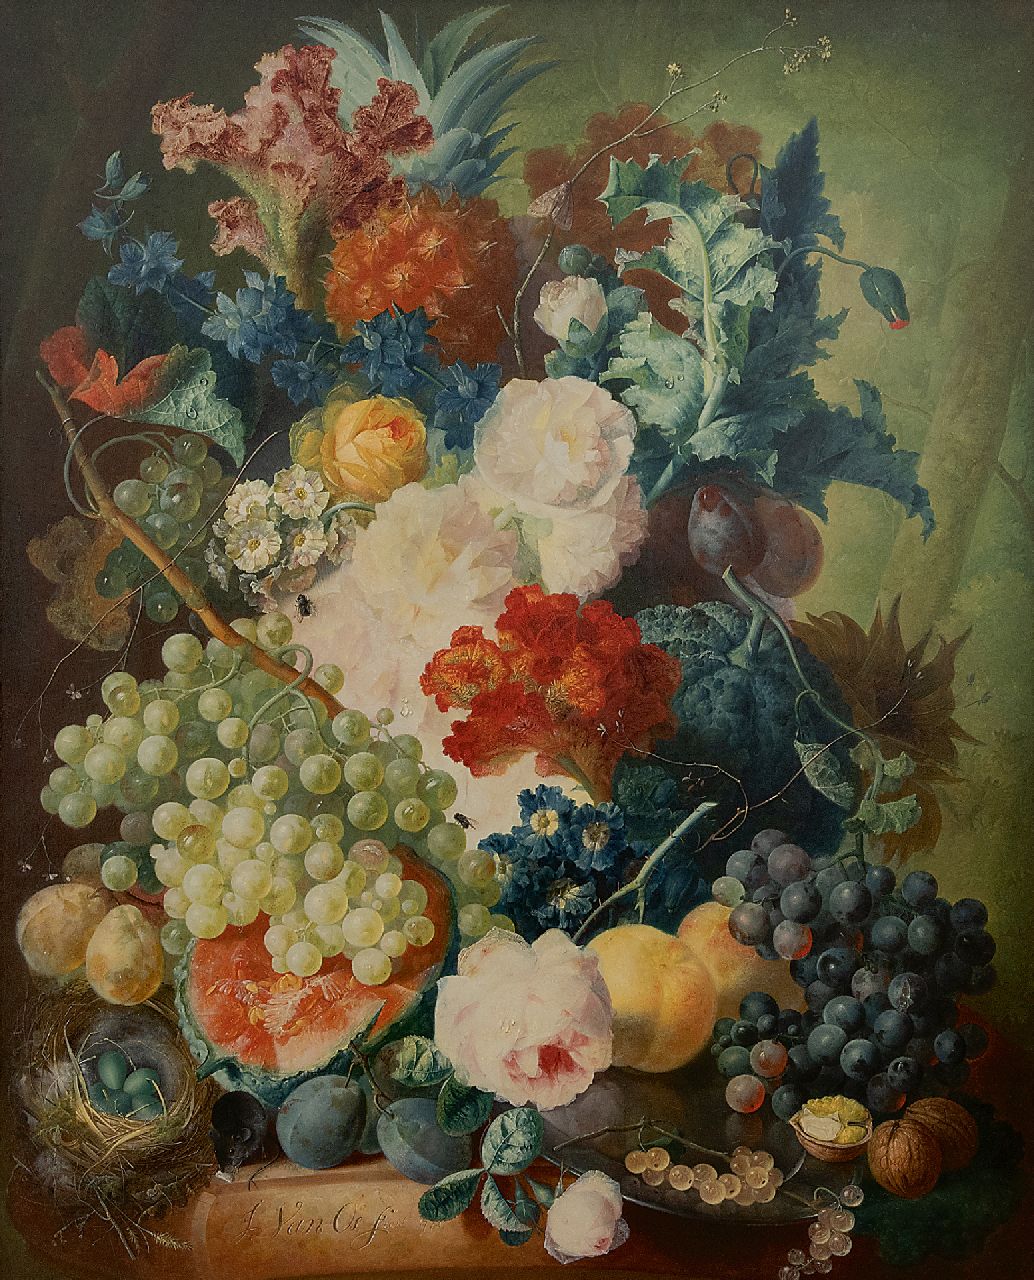 Os J. van | Jan van Os | Schilderijen te koop aangeboden | Stilleven met bloemen, fruit, insecten, een muis en een vogelnest, olieverf op paneel 70,0 x 56,0 cm, gesigneerd linksonder en gedateerd 1774